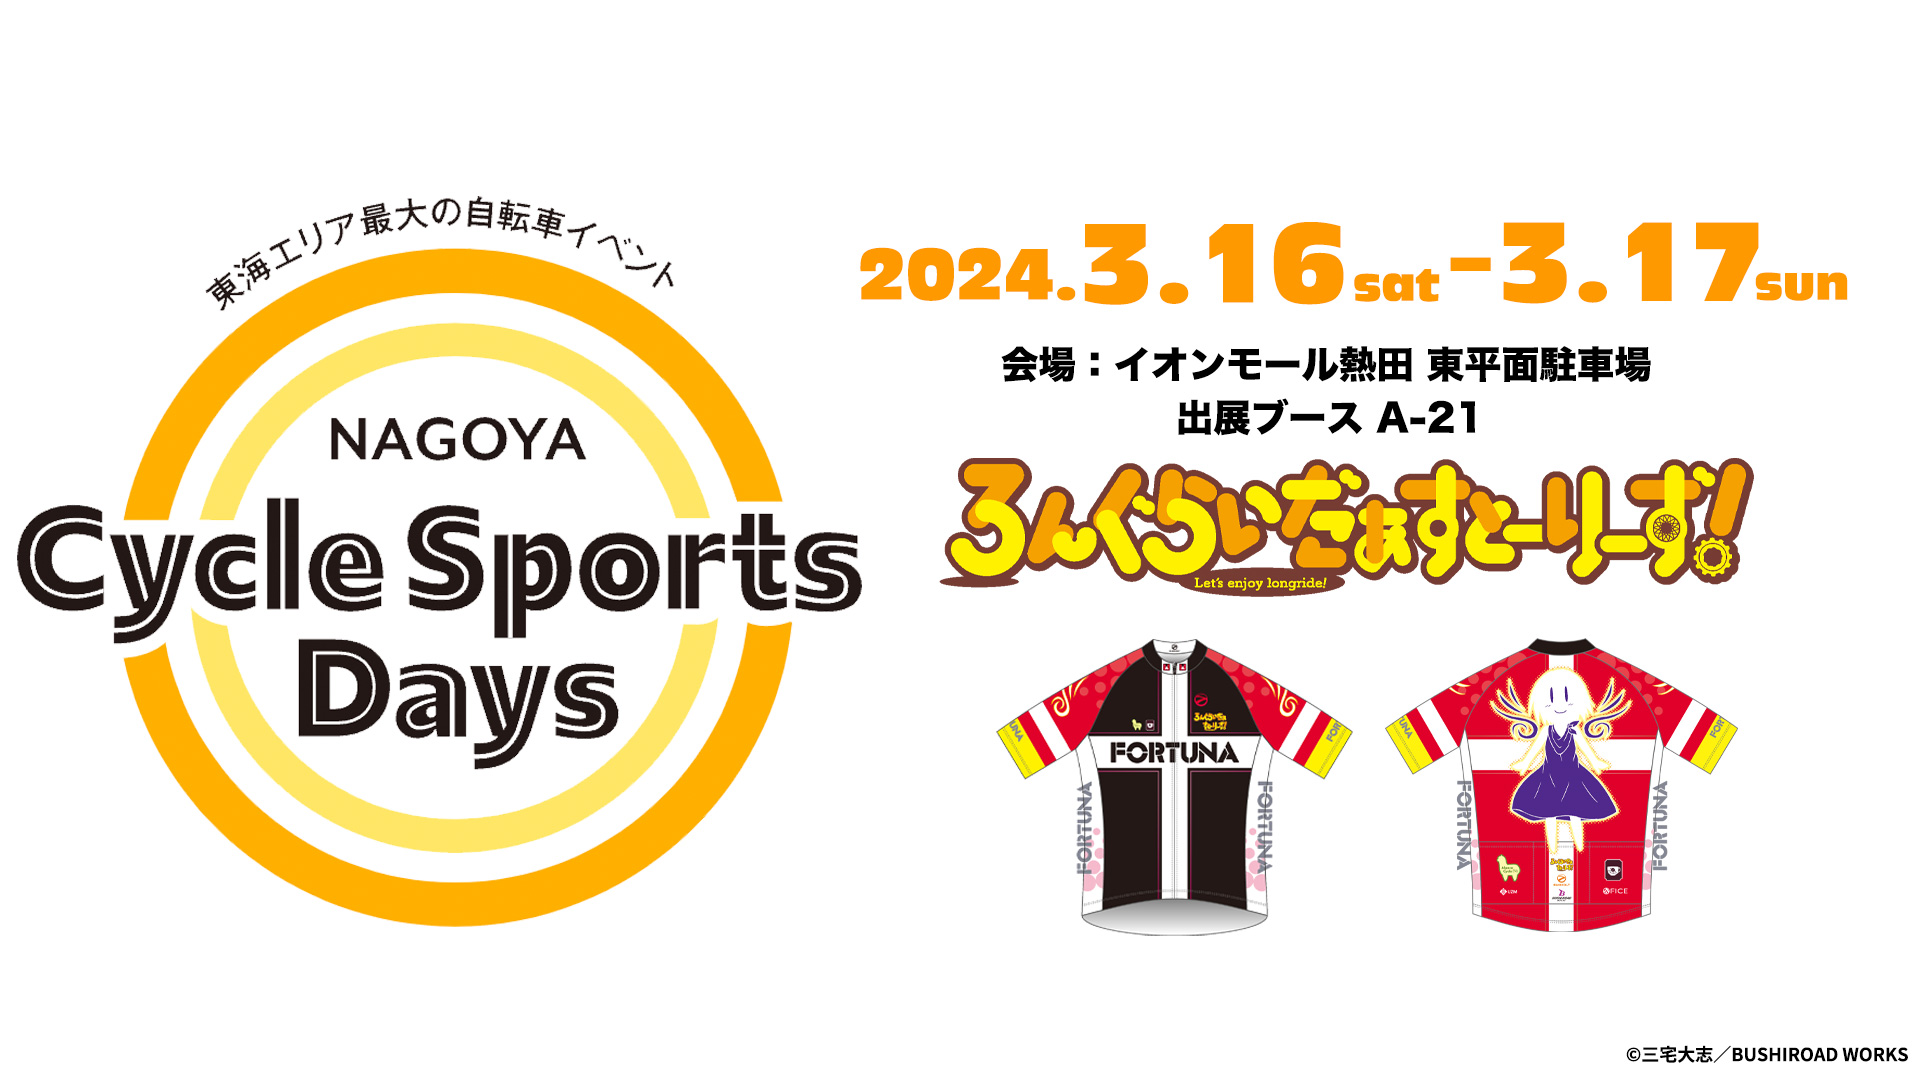 【イベント情報】名古屋サイクルスポーツデイズ2024（3/16土曜〜3/17日曜）